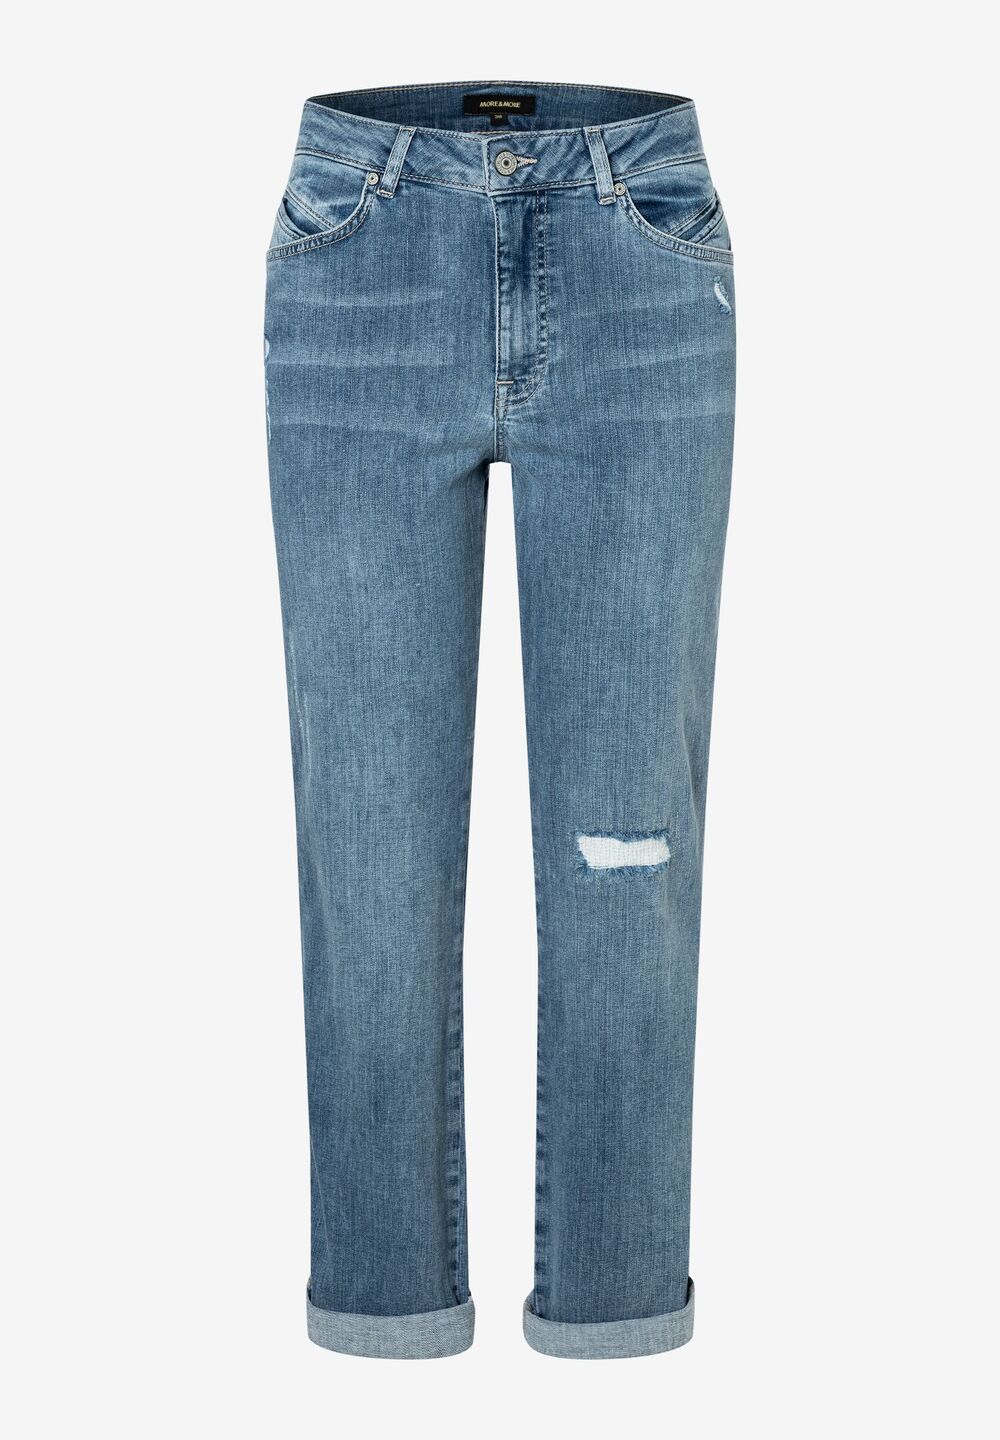 Jeans mit destroyed Stellen, Frühjahrs-Kollektion, denimDetailansicht 1